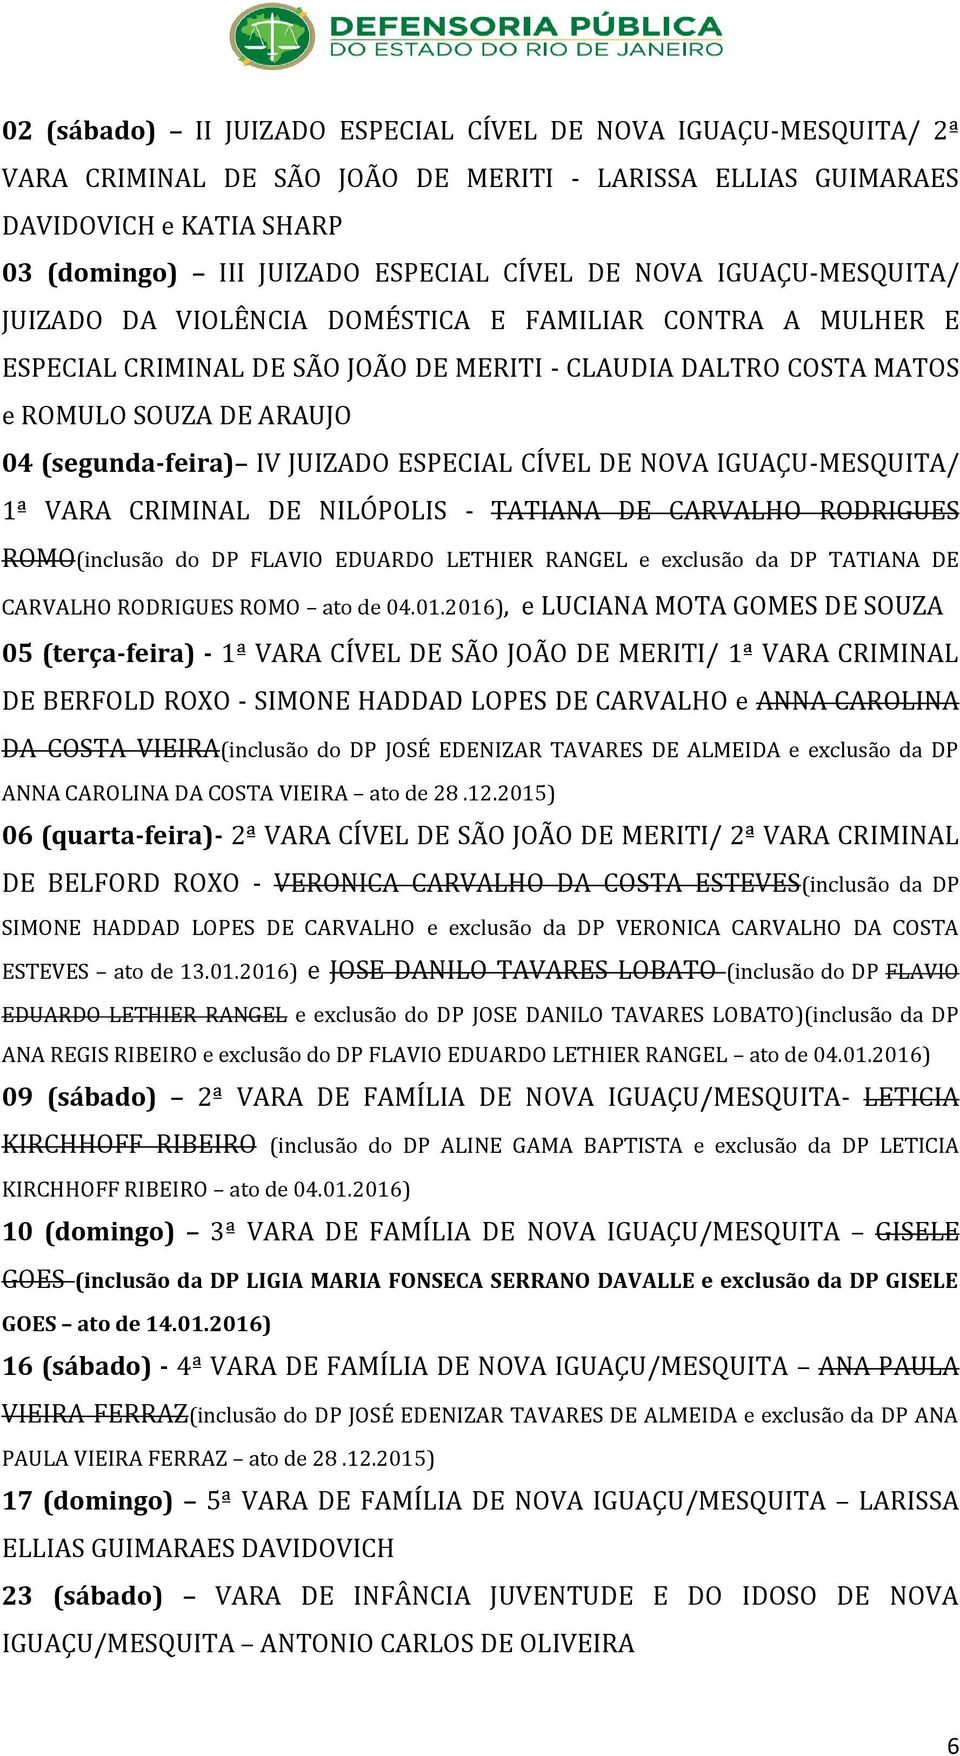 JUIZADO ESPECIAL CÍVEL DE NOVA IGUAÇU-MESQUITA/ 1ª VARA CRIMINAL DE NILÓPOLIS - TATIANA DE CARVALHO RODRIGUES ROMO(inclusão do DP FLAVIO EDUARDO LETHIER RANGEL e exclusão da DP TATIANA DE CARVALHO